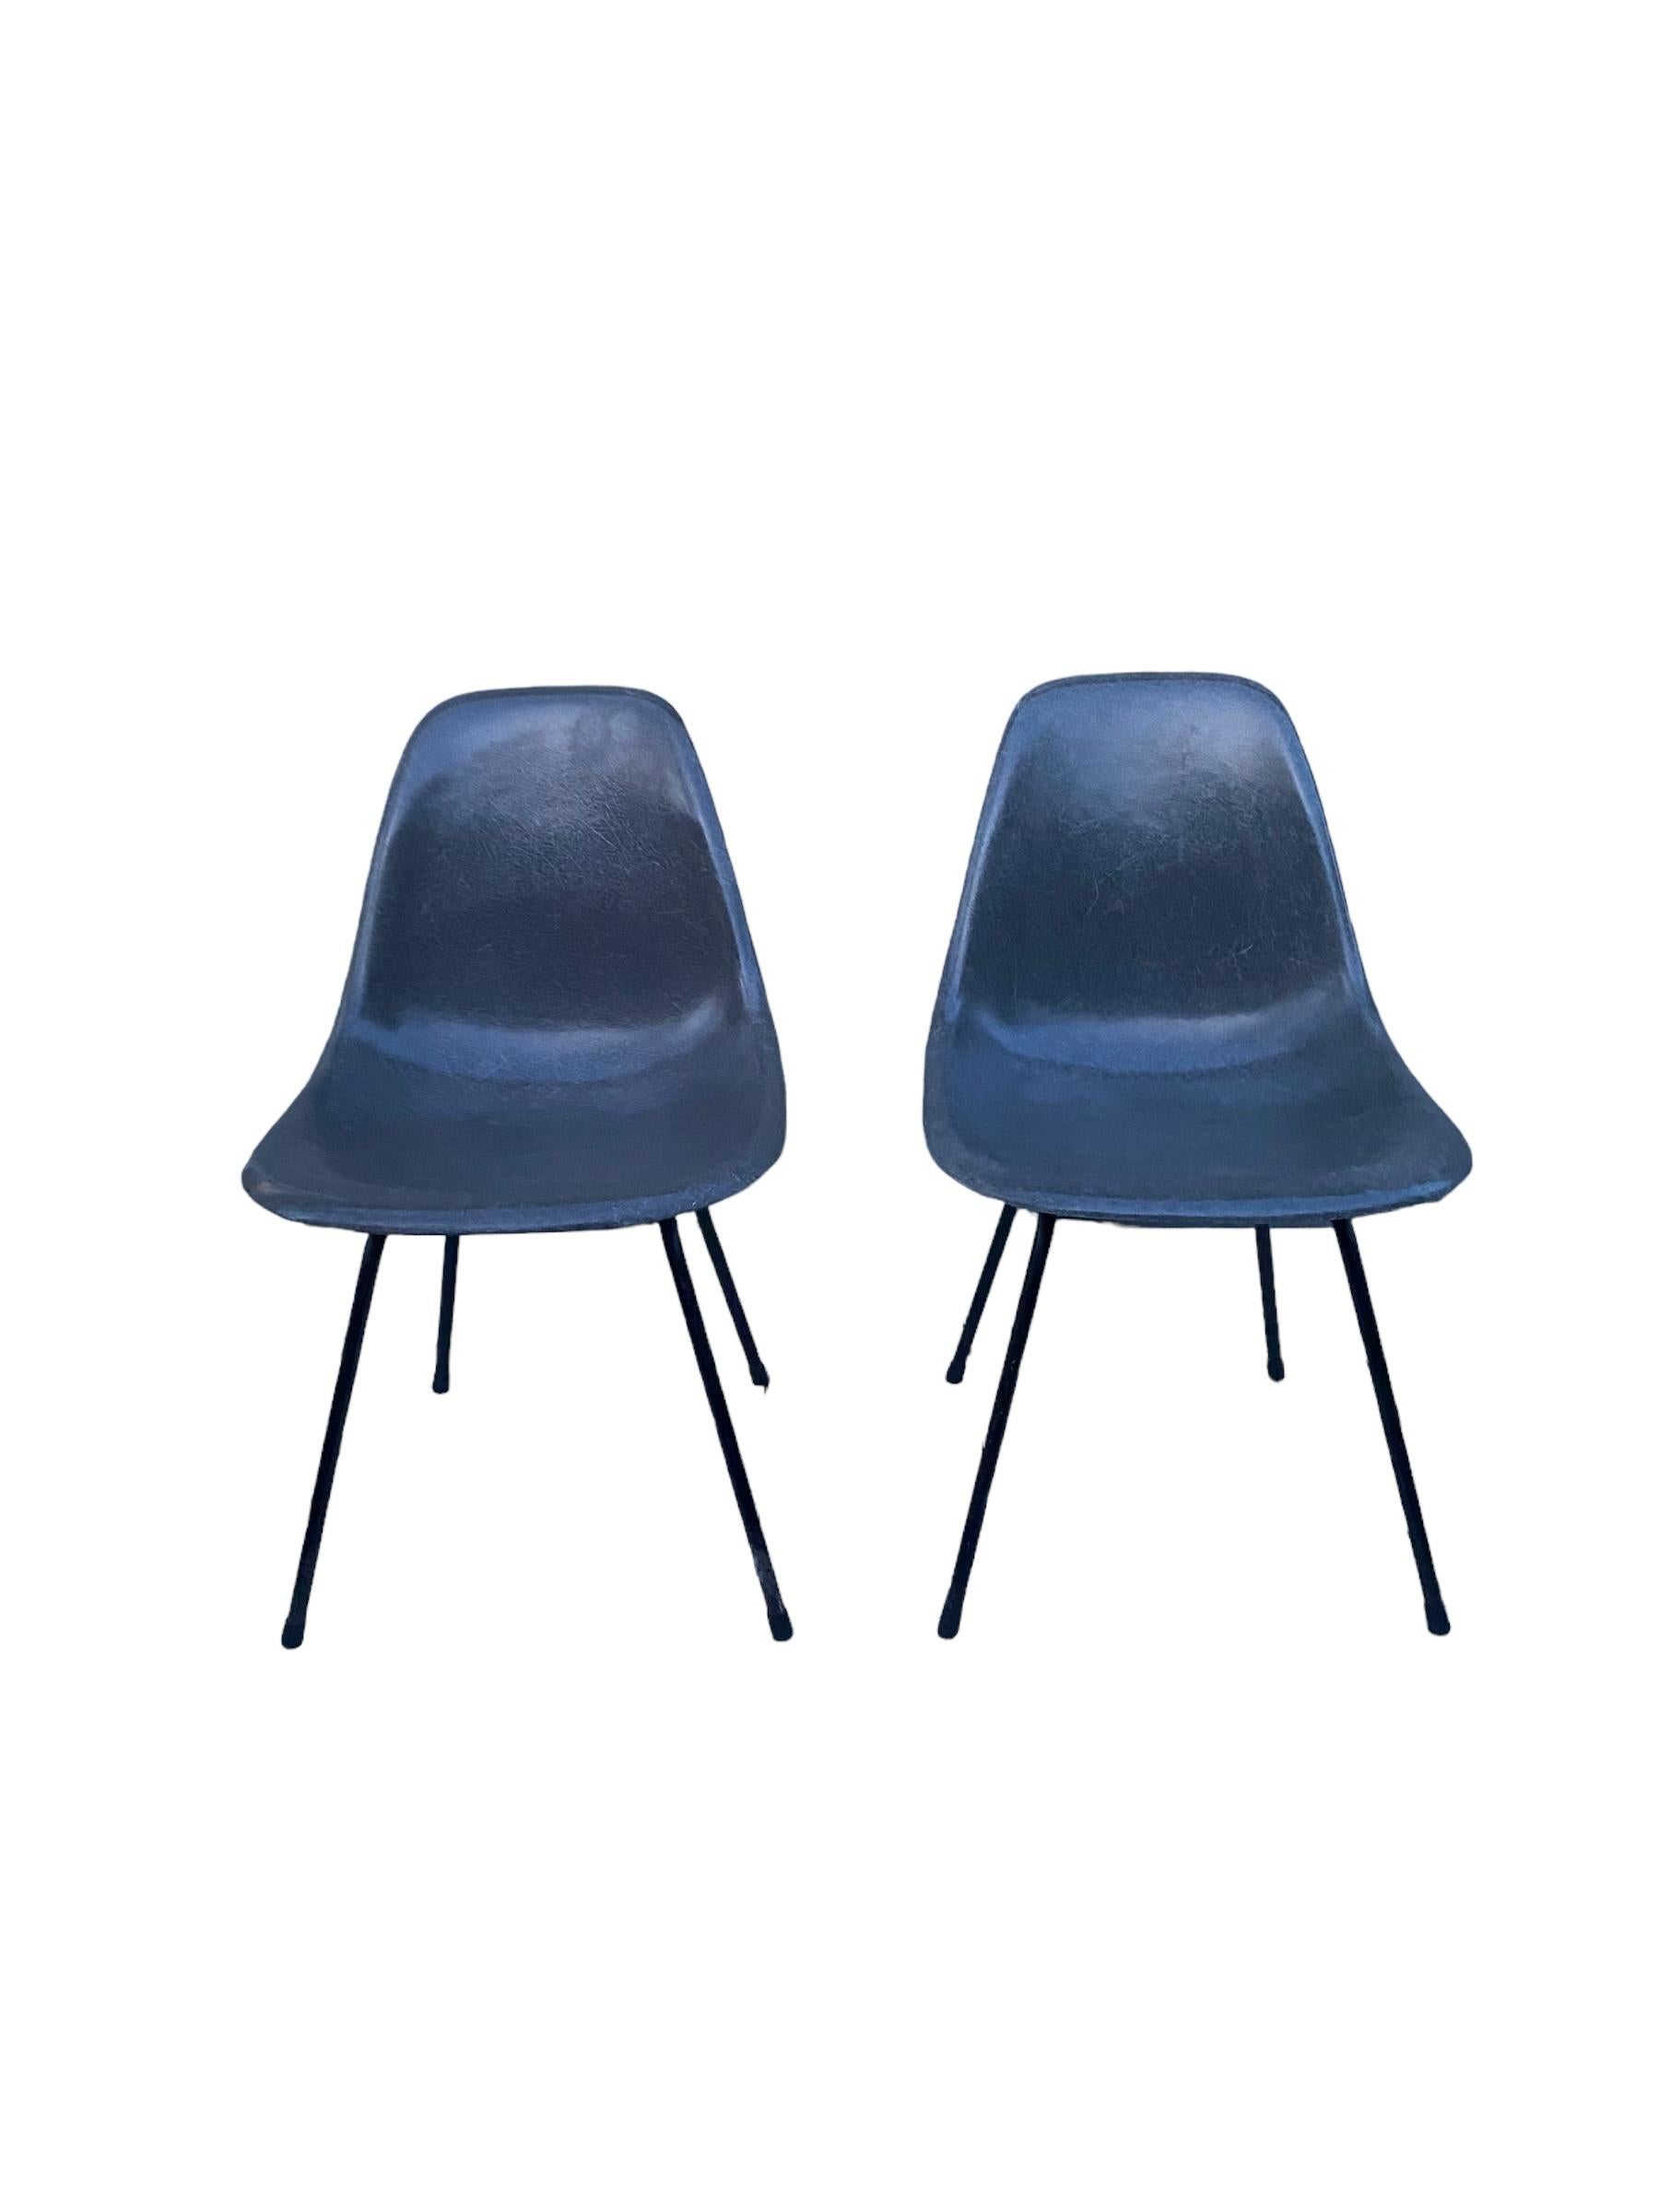 Paire de chaises de salle à manger Eames Elephant Gray de Herman Miller. Ces chaises d'appoint ont une excellente texture de fibre de verre et une couleur uniforme. Logo Herman Miller en relief visible et étiquette de brevet partielle visible. Pas